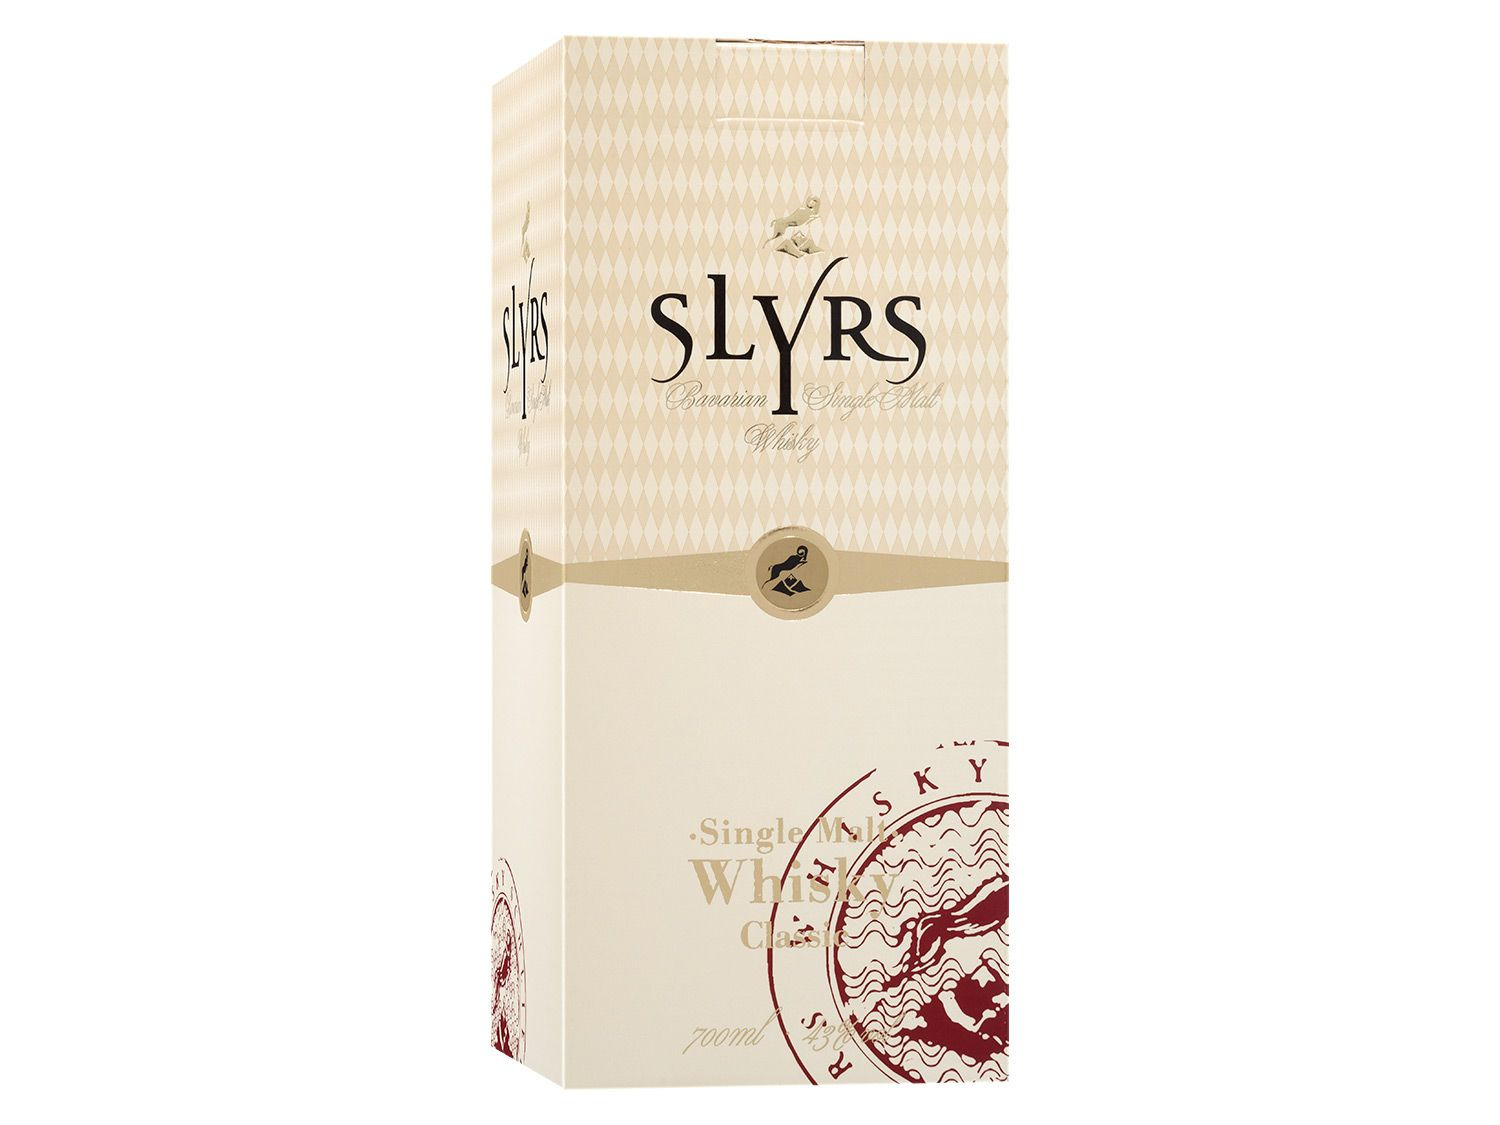 Slyrs Bavarian Single Malt Whisky mit Geschenkbox 43% …